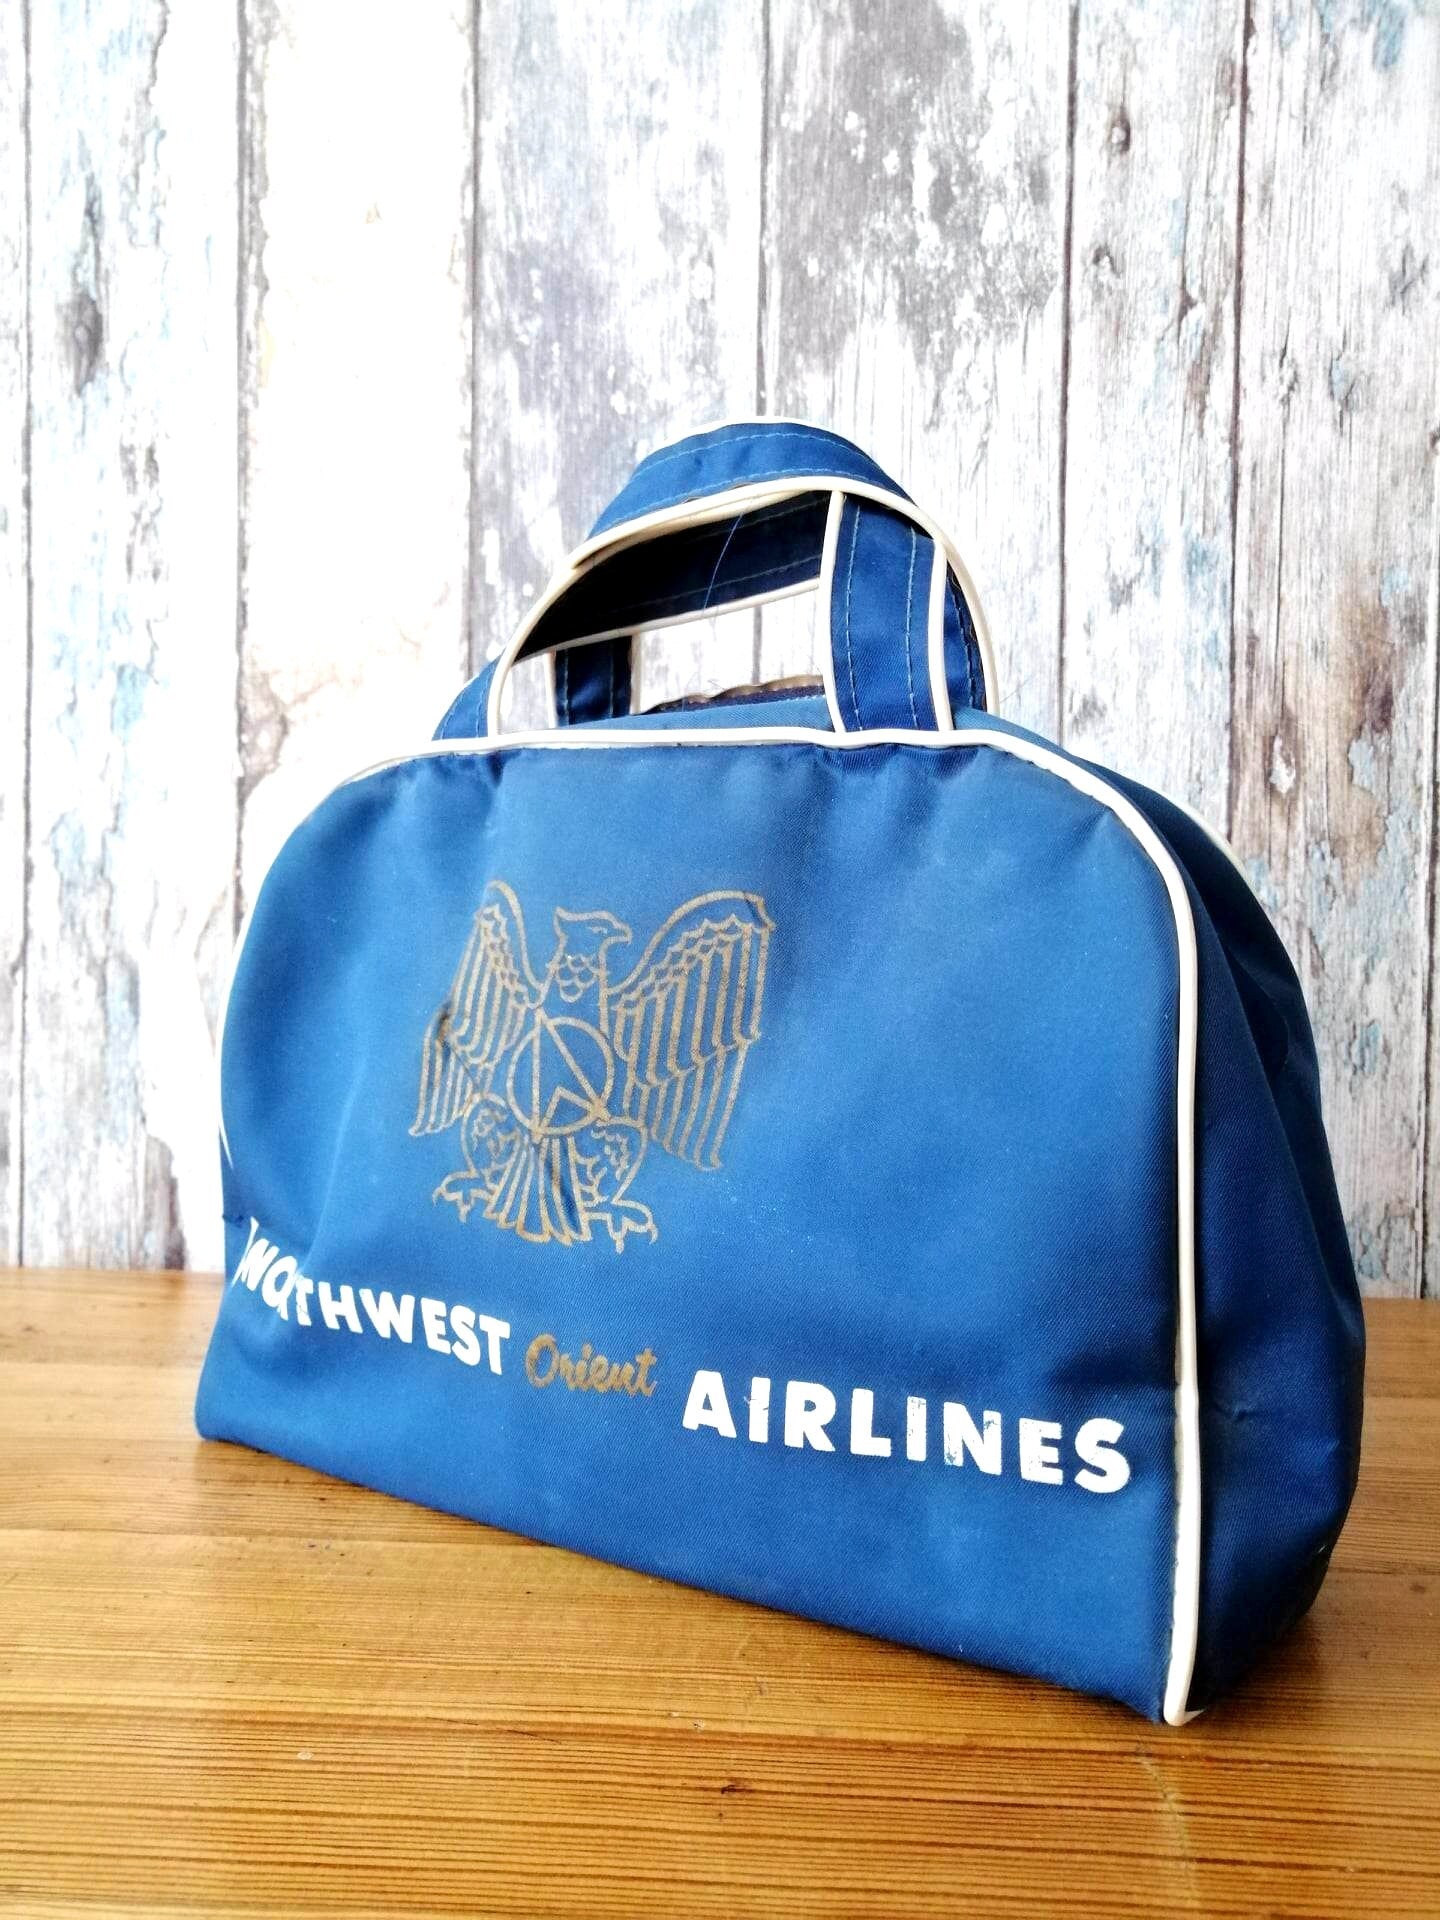 Nortwest Orient Airlines Vintage Flight Bag Carry On Bag